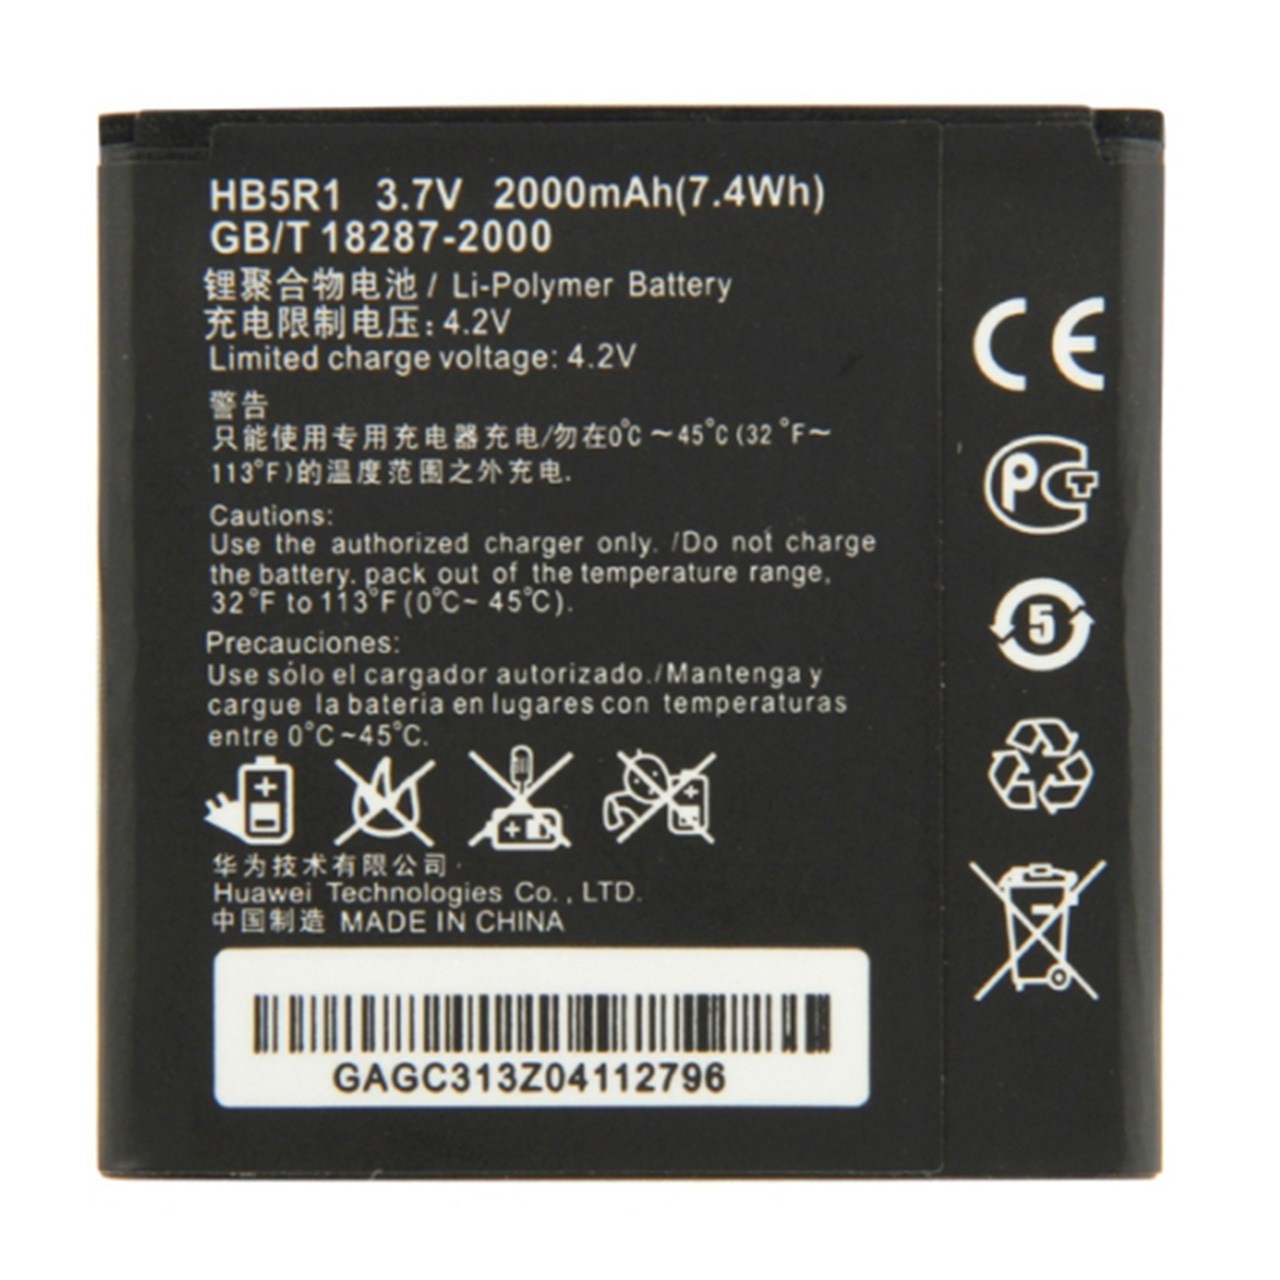 باتری موبایل مدل HB5R1 با ظرفیت 2150mAh مناسب برای گوشی موبایل هوآوی G600